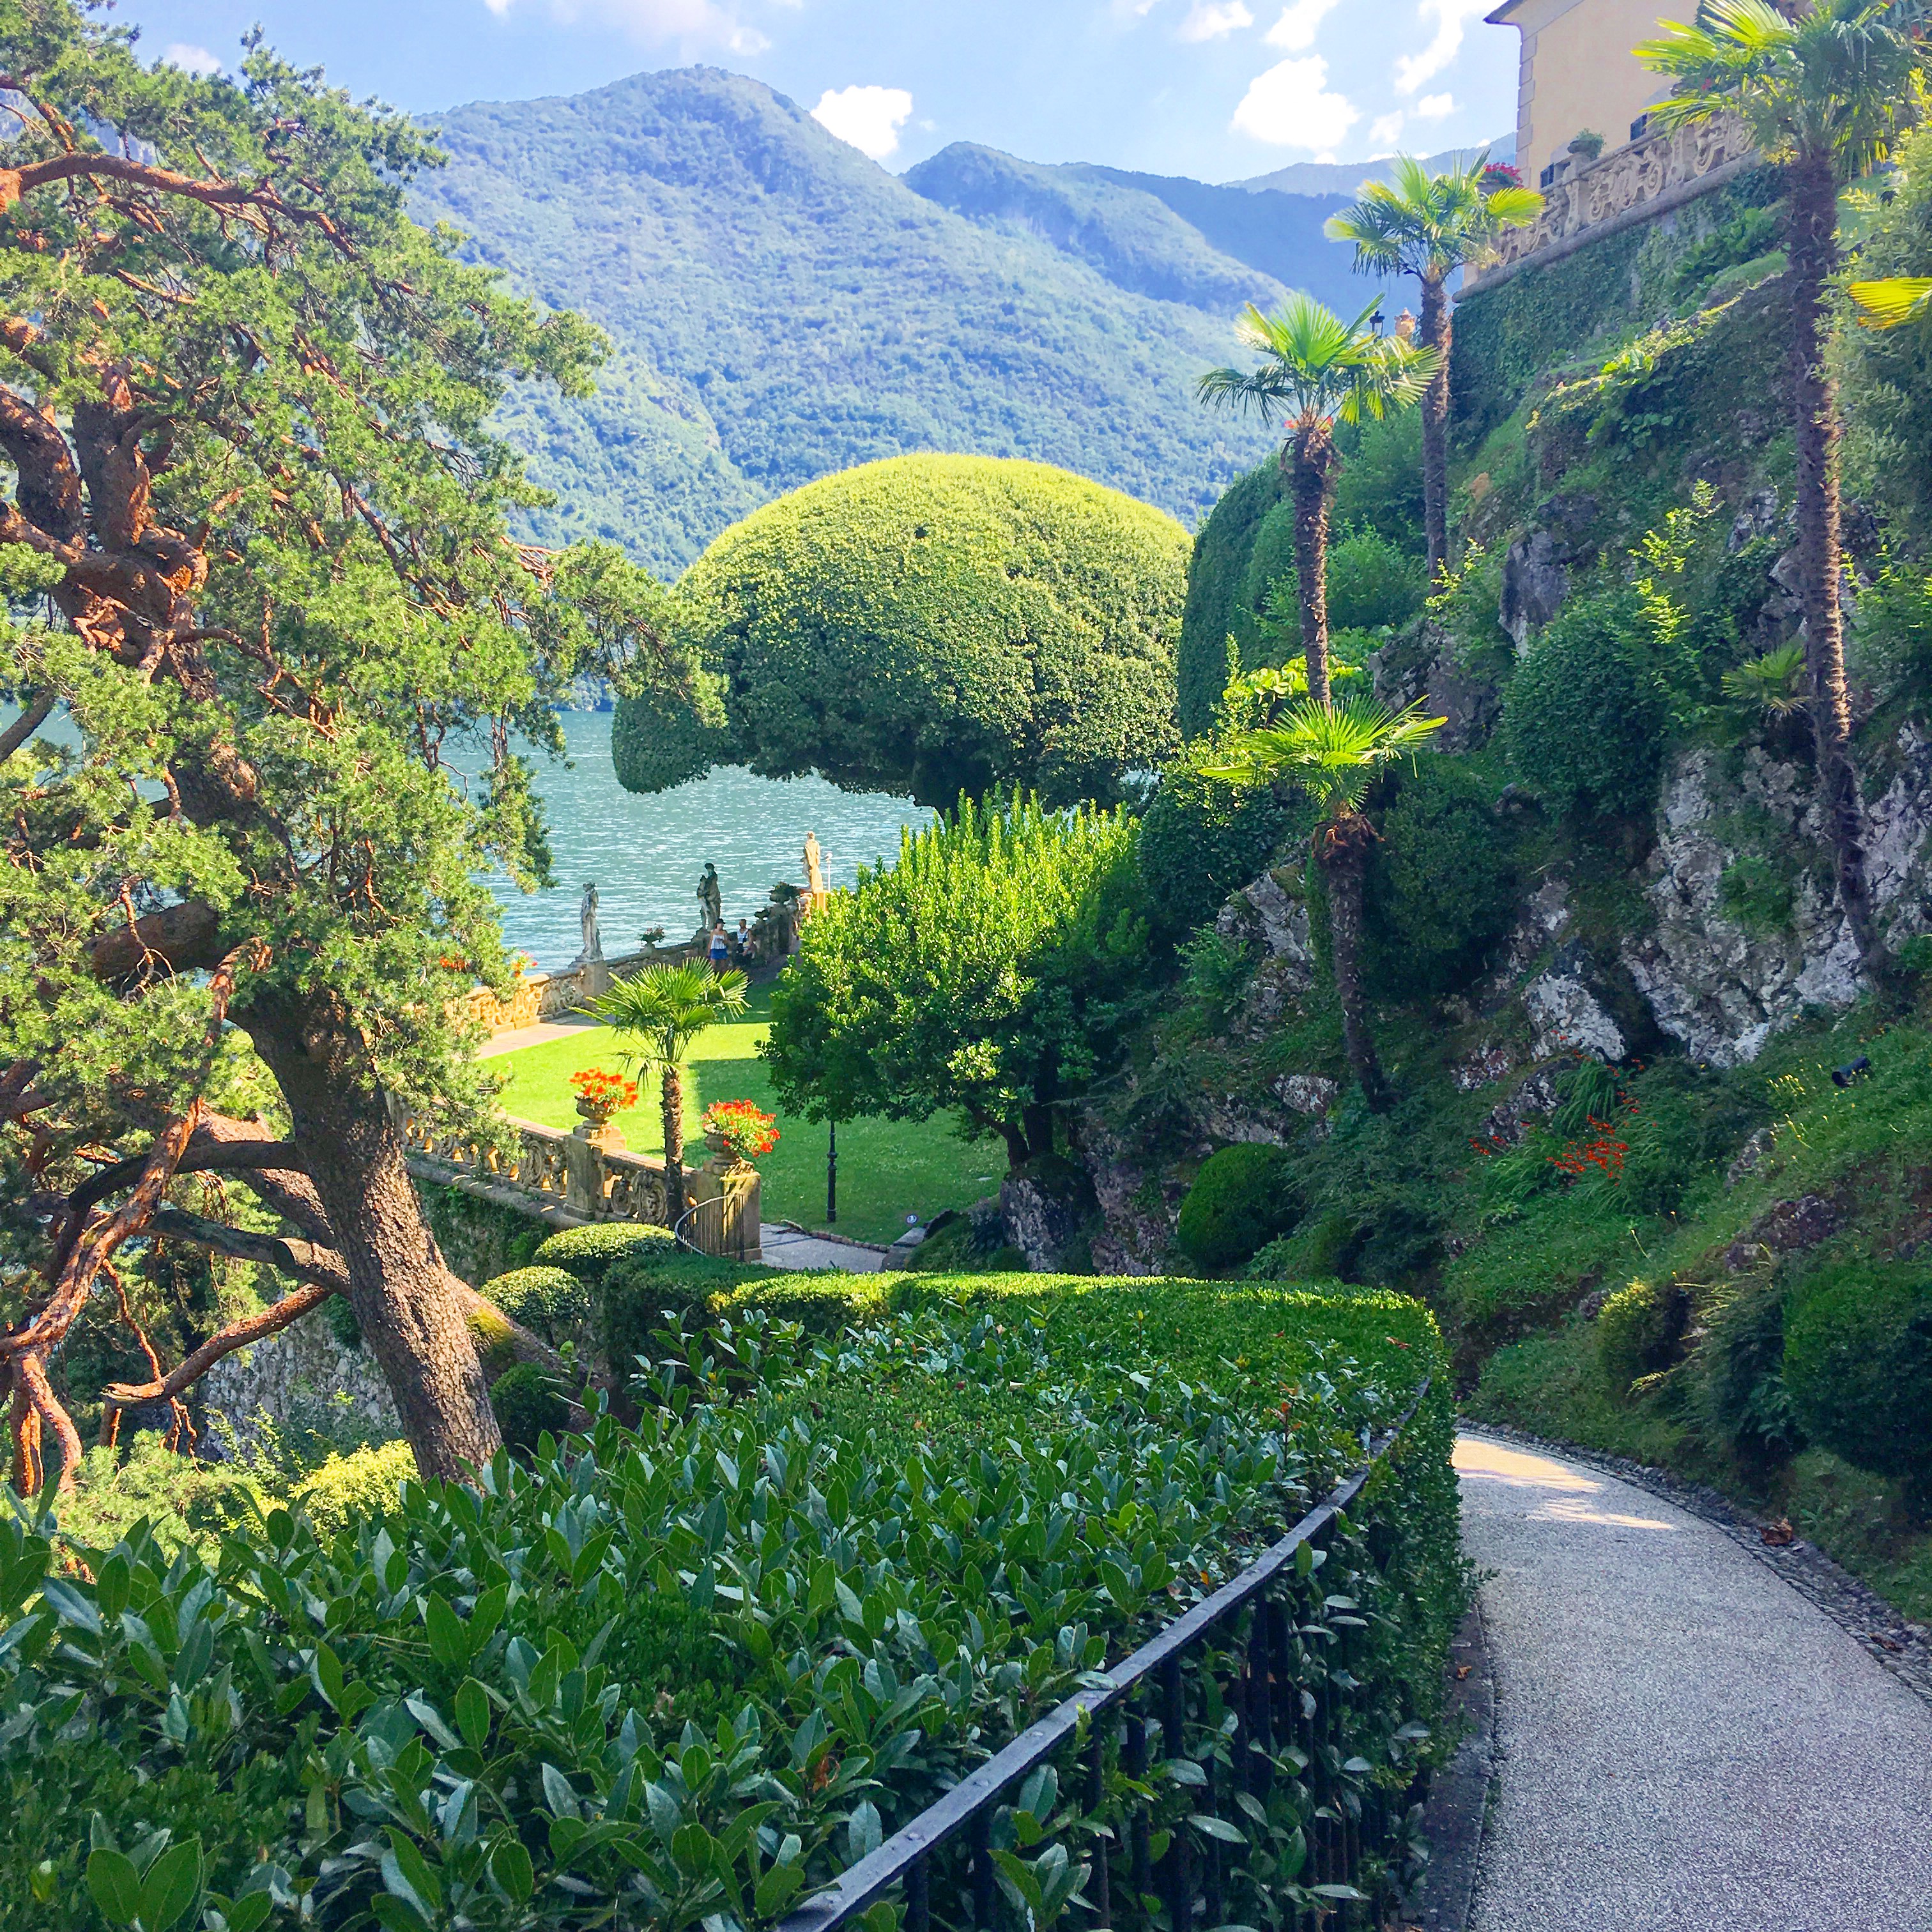 Views at Villa Balbaniello